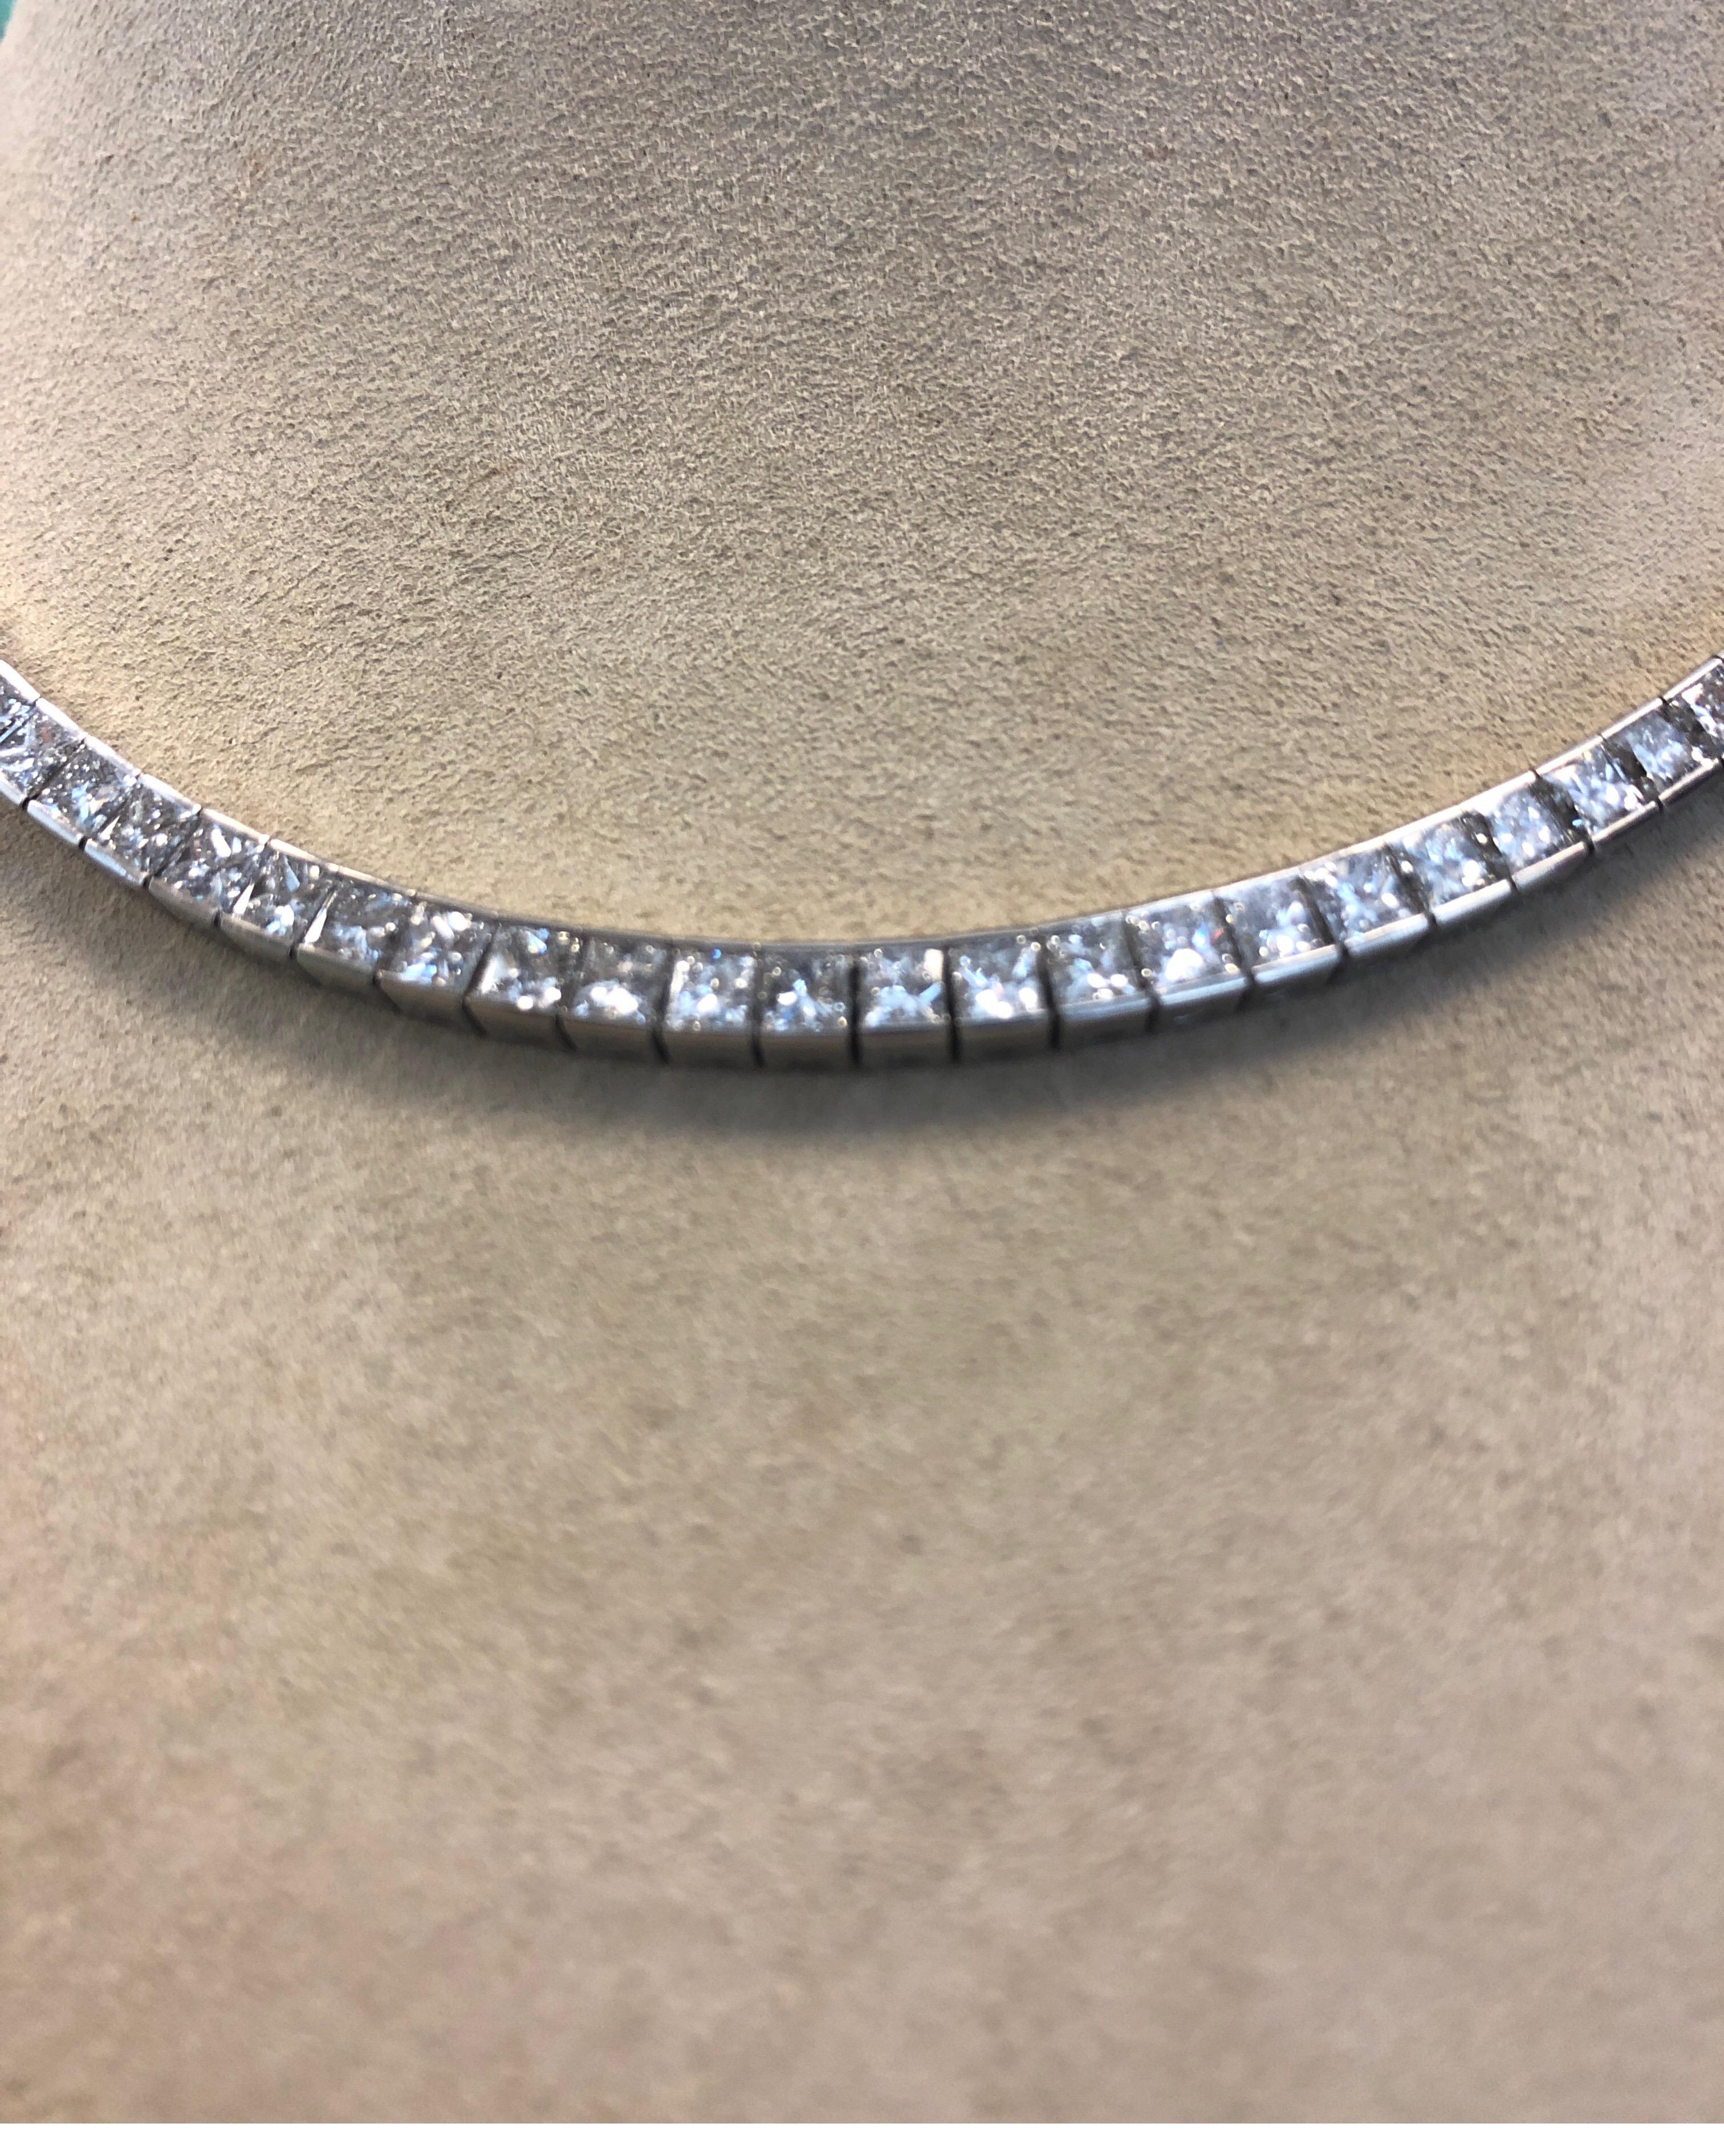 Women's Platinum Flexible Necklace, Channel Set with 98 Square Princess Cut Diamonds